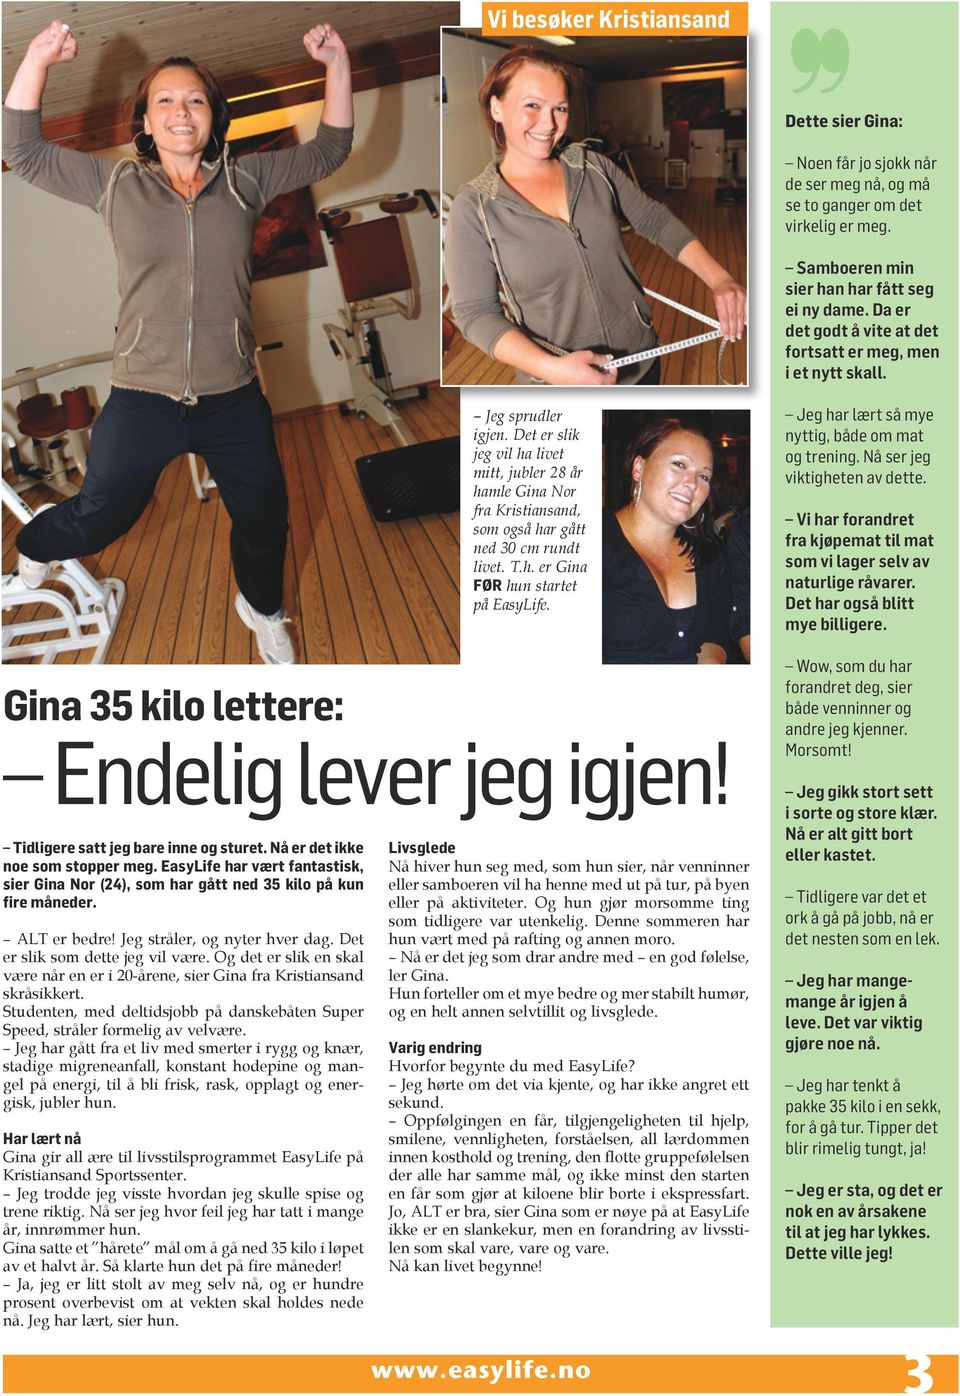 Det er slik jeg vil ha livet mitt, jubler 28 år hamle Gina Nor fra Kristiansand, som også har gått ned 30 cm rundt livet. T.h. er Gina FØR hun startet på EasyLife.